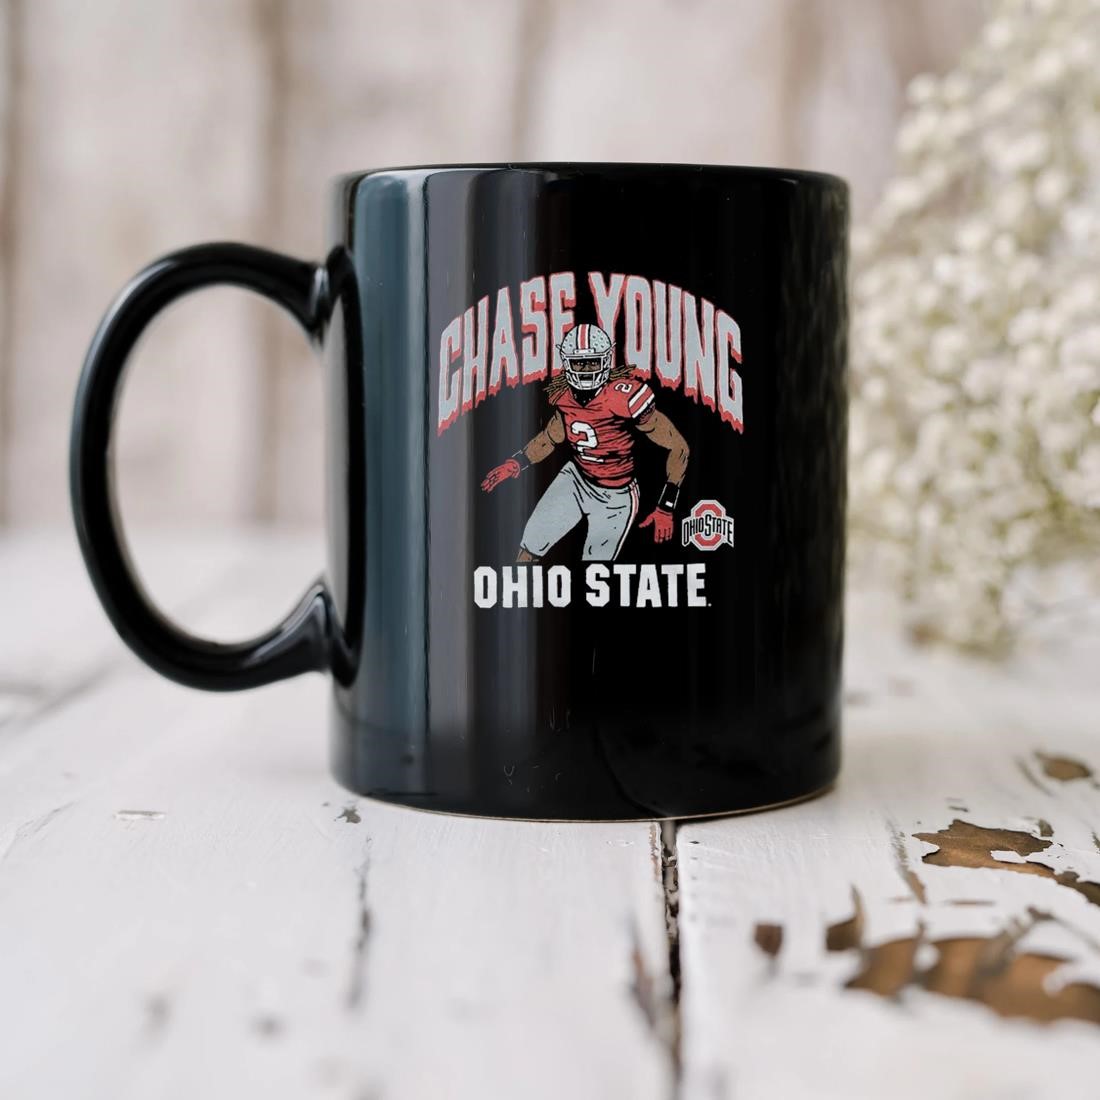 Chase Young Ohio State Nfl Mug biu.jpg